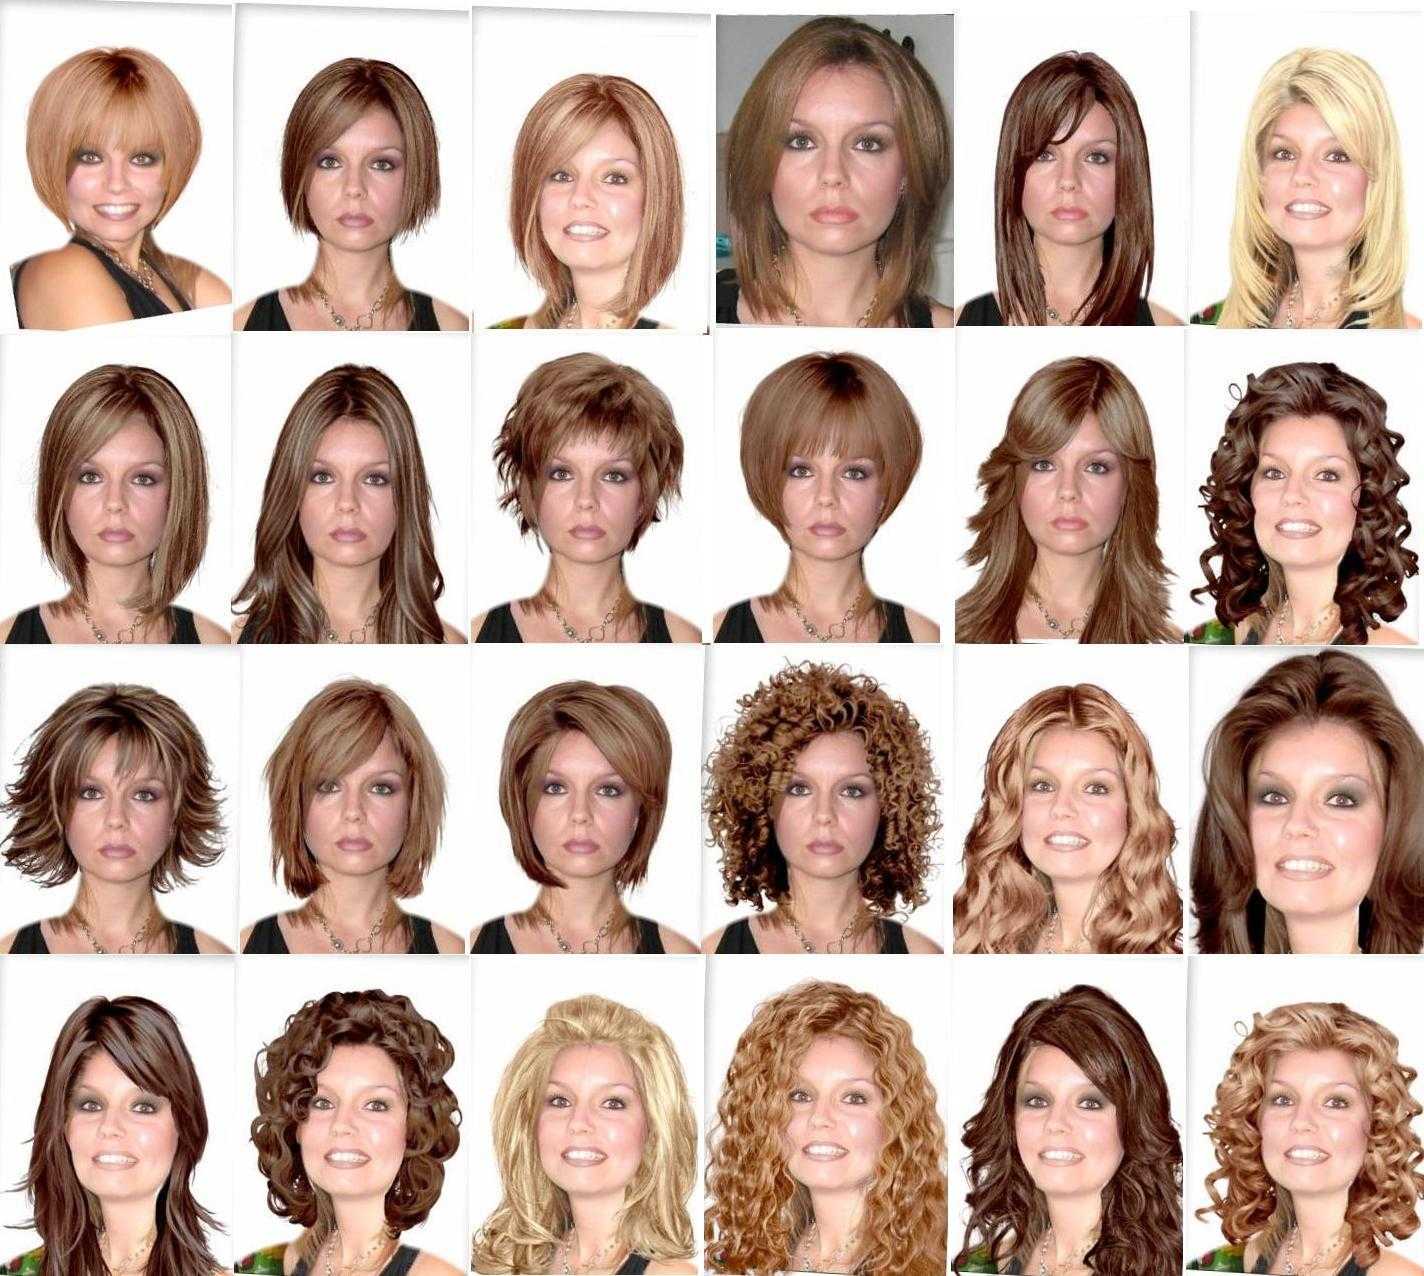 Длинные, короткие, средней длины – к волосам любой длины можно подобрать стильную прическу, которая подчеркнет красоту девушек с квадратным типом лица Поговорим о самых беспроигрышных вариантах